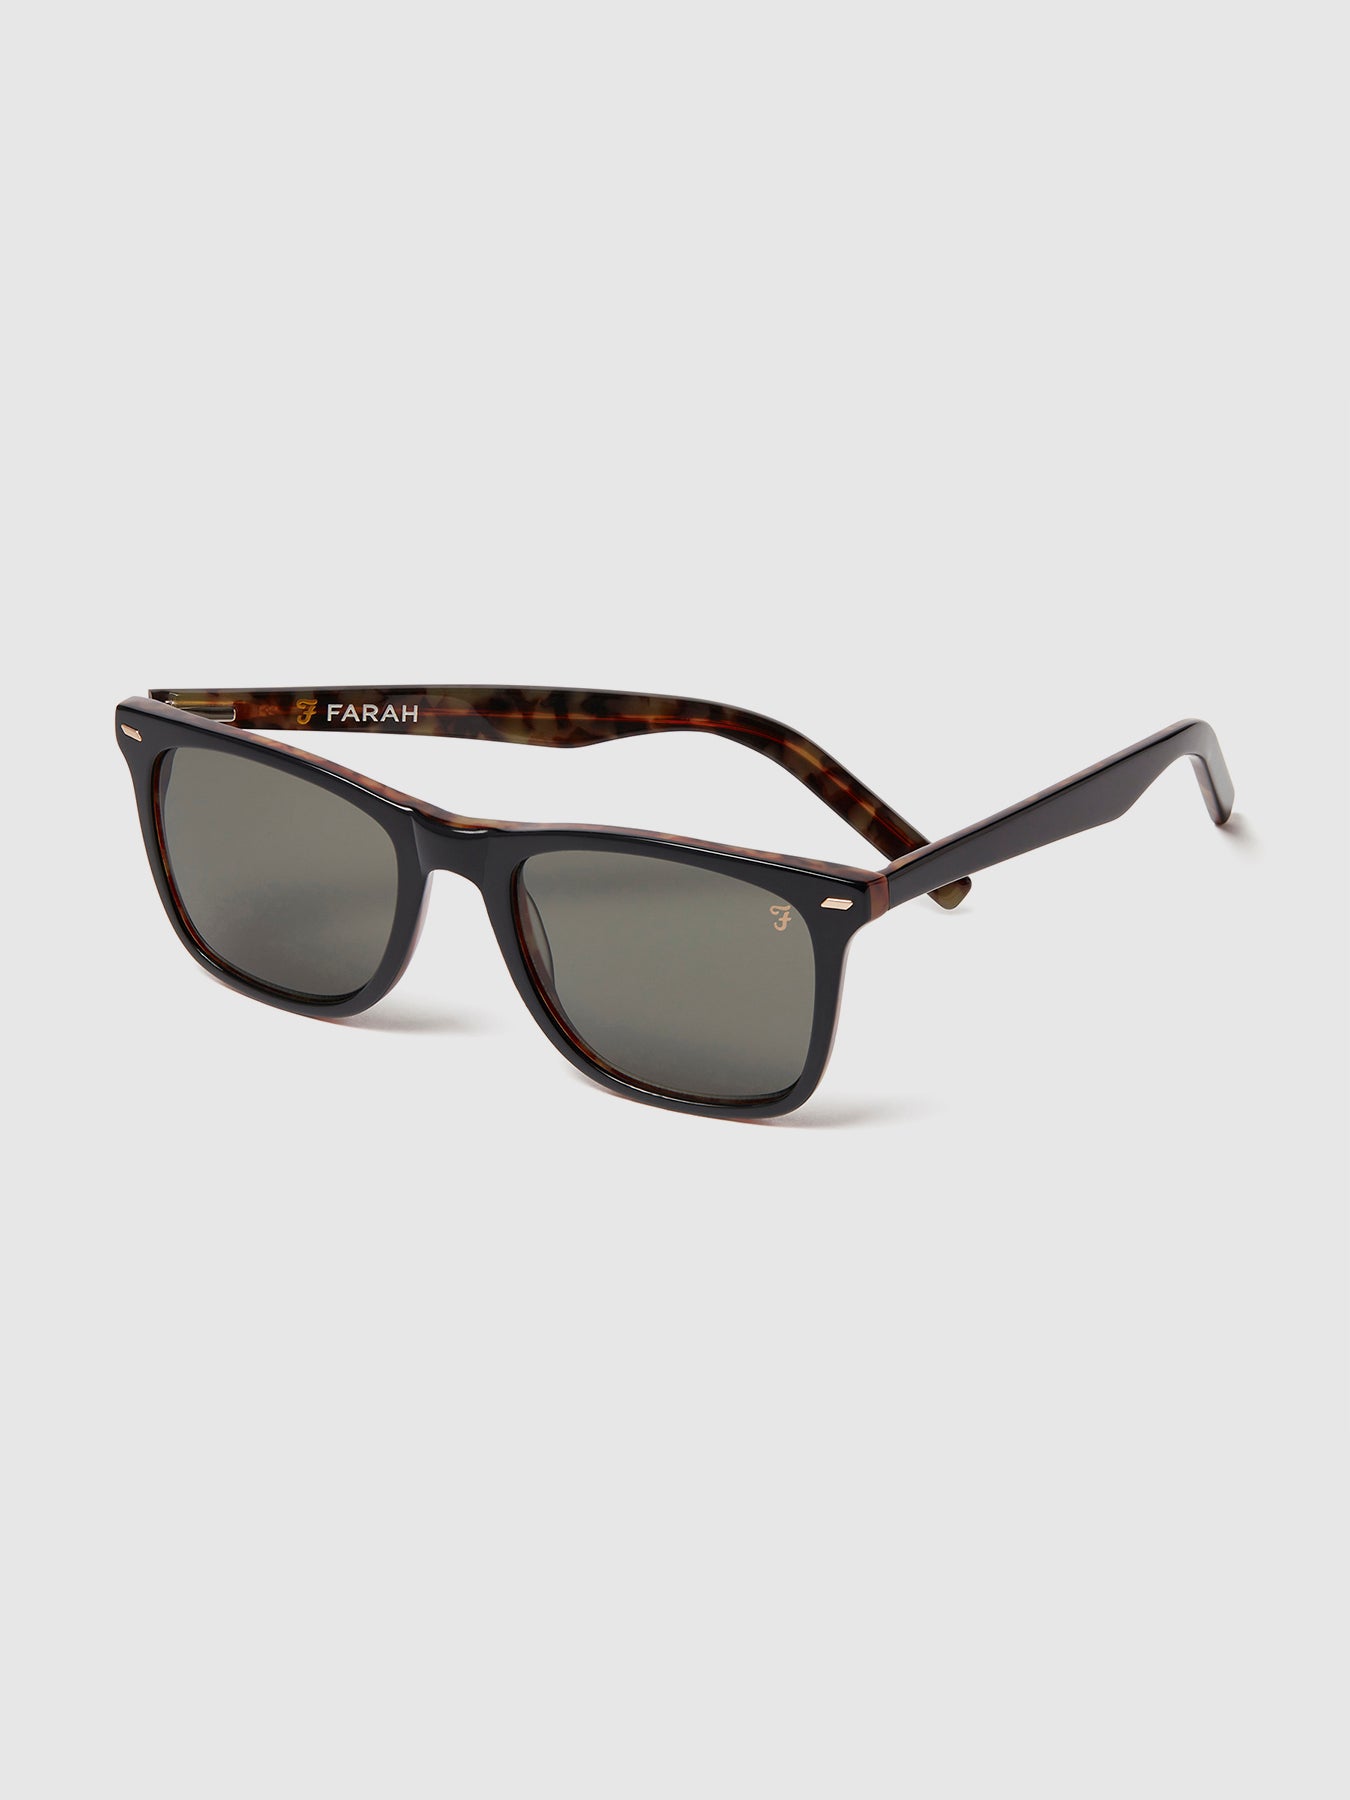 Farah Farer Frame Sunglasses In Black